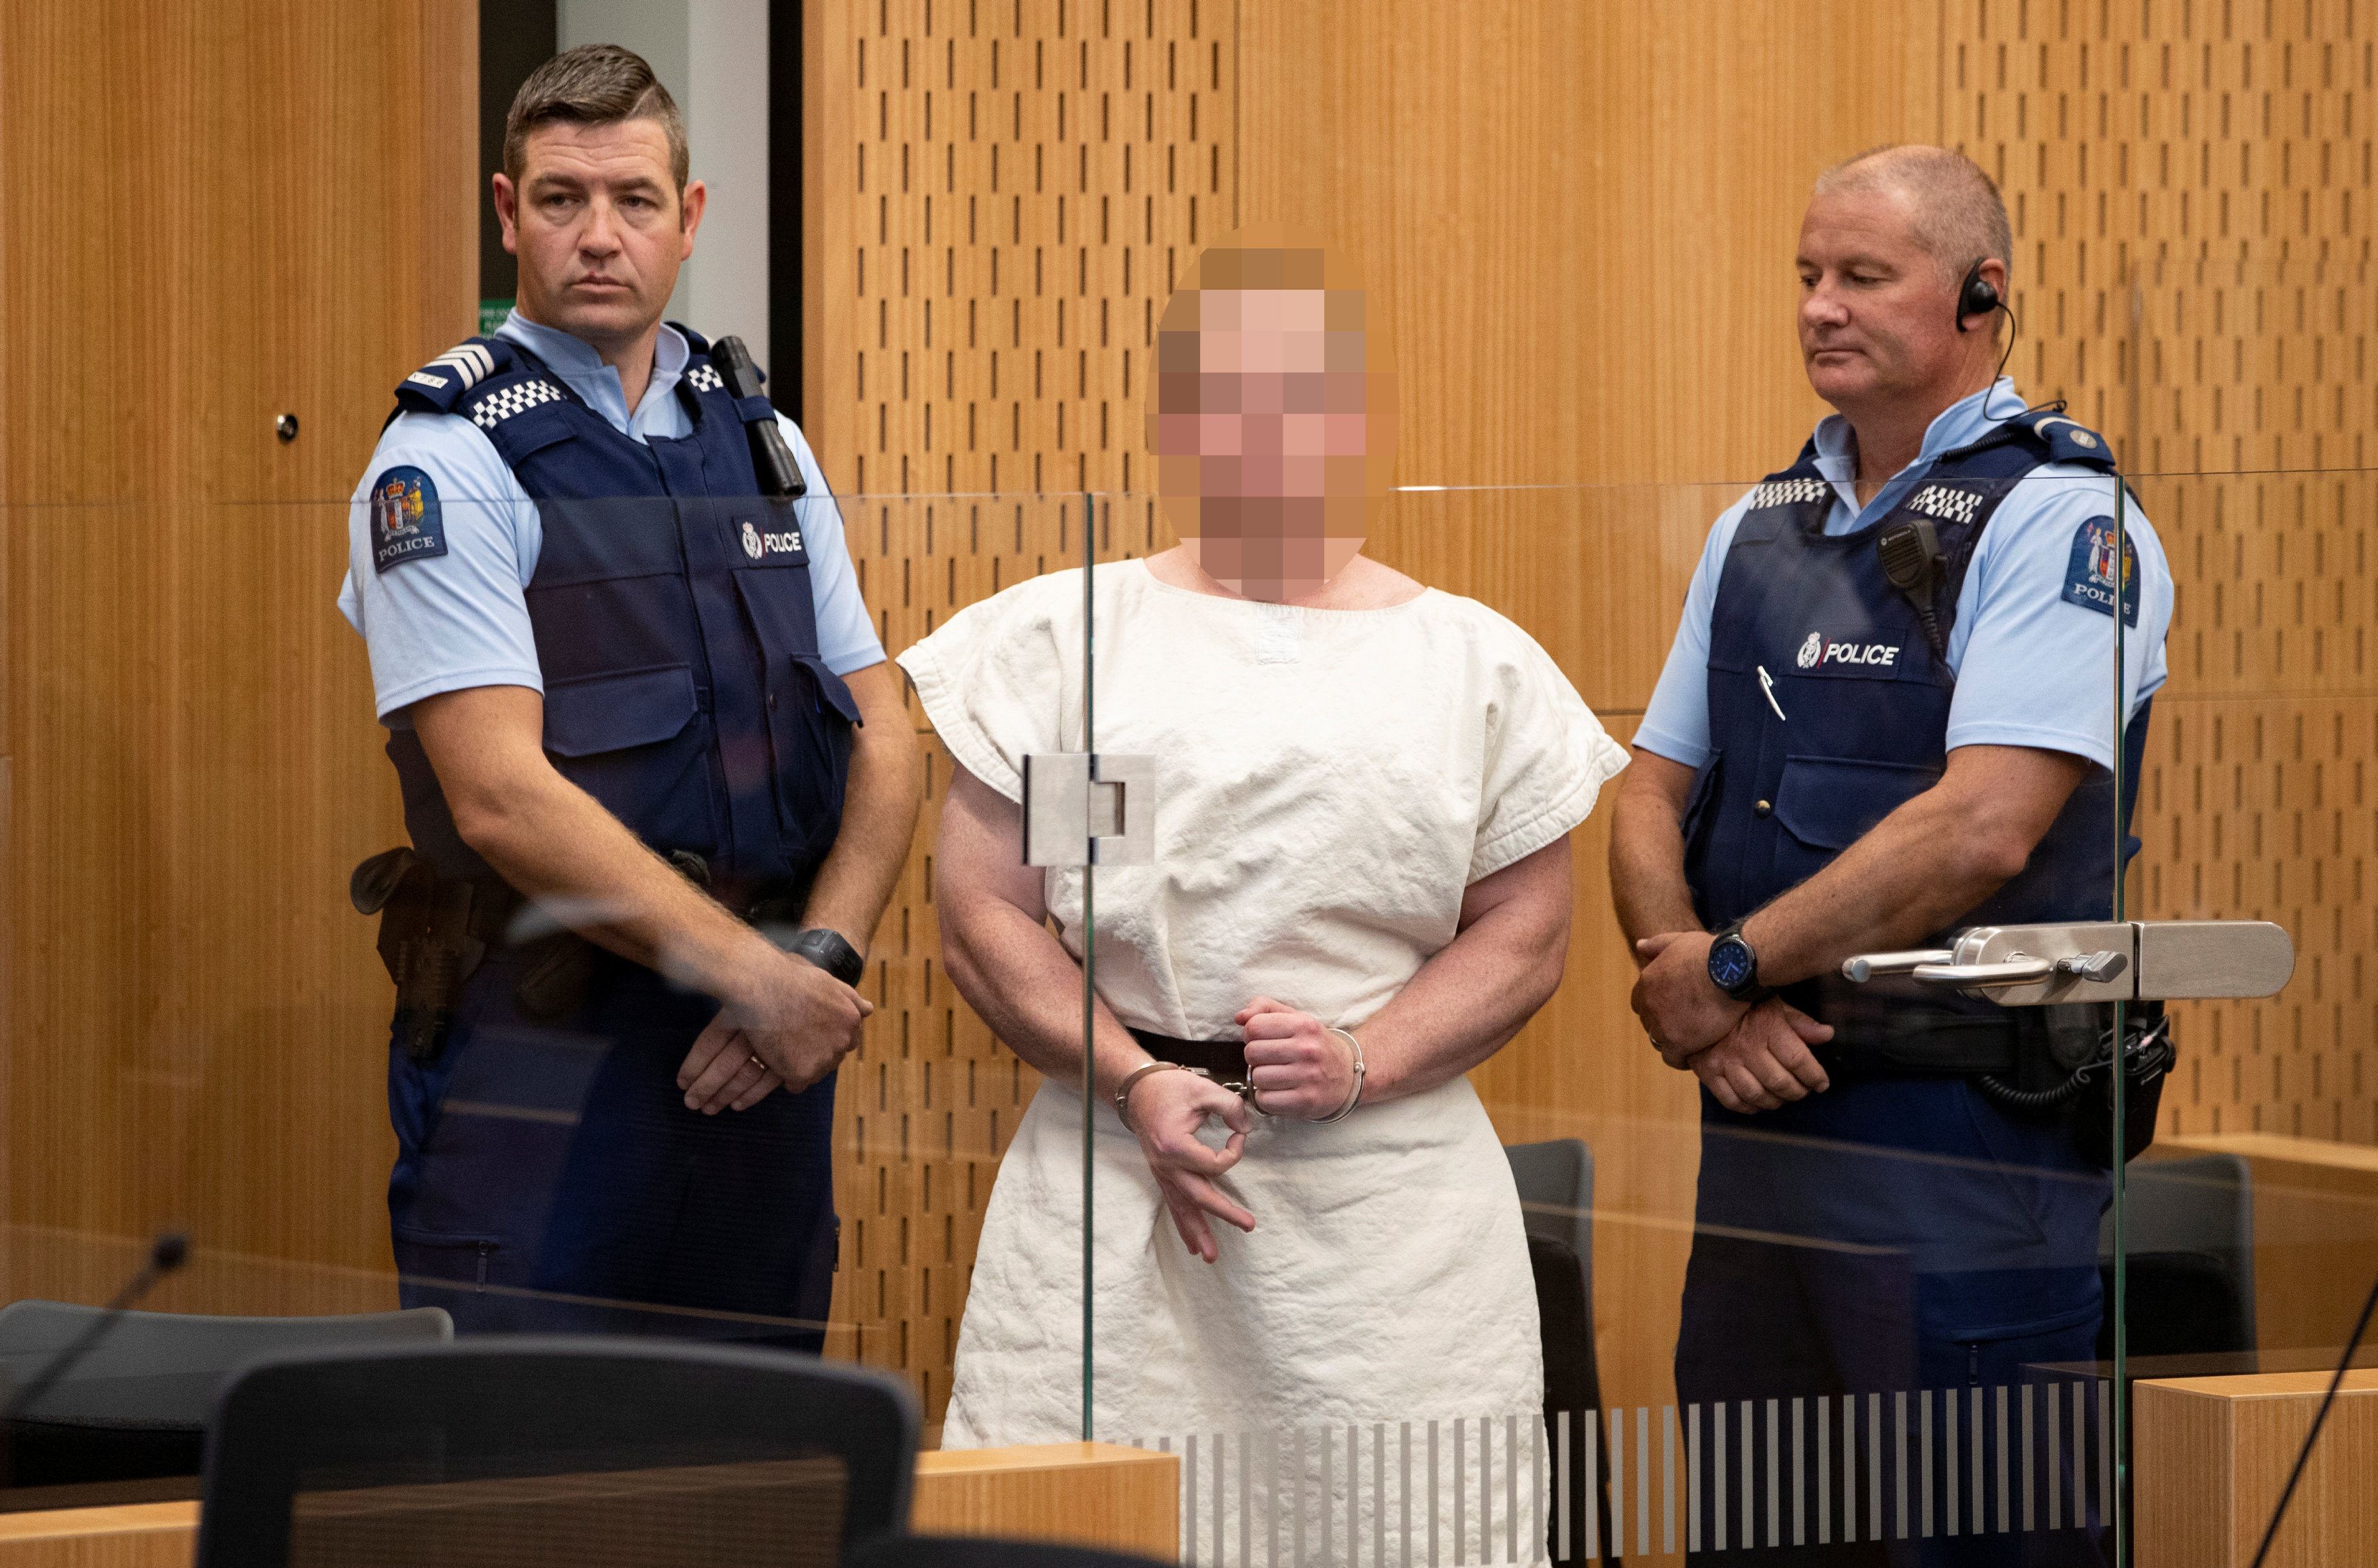 برينتون تارنت، متهم بتنفيذ "المذبحة الإرهابية" أثناء مثوله أمام محكمة مقاطعة كرايست تشيرش في نيوزيلندا. (الوجه مغطى من المصدر). 16 مارس 2019. مارك ميتشل / نيوزيلاندا هيرالد / رويترز